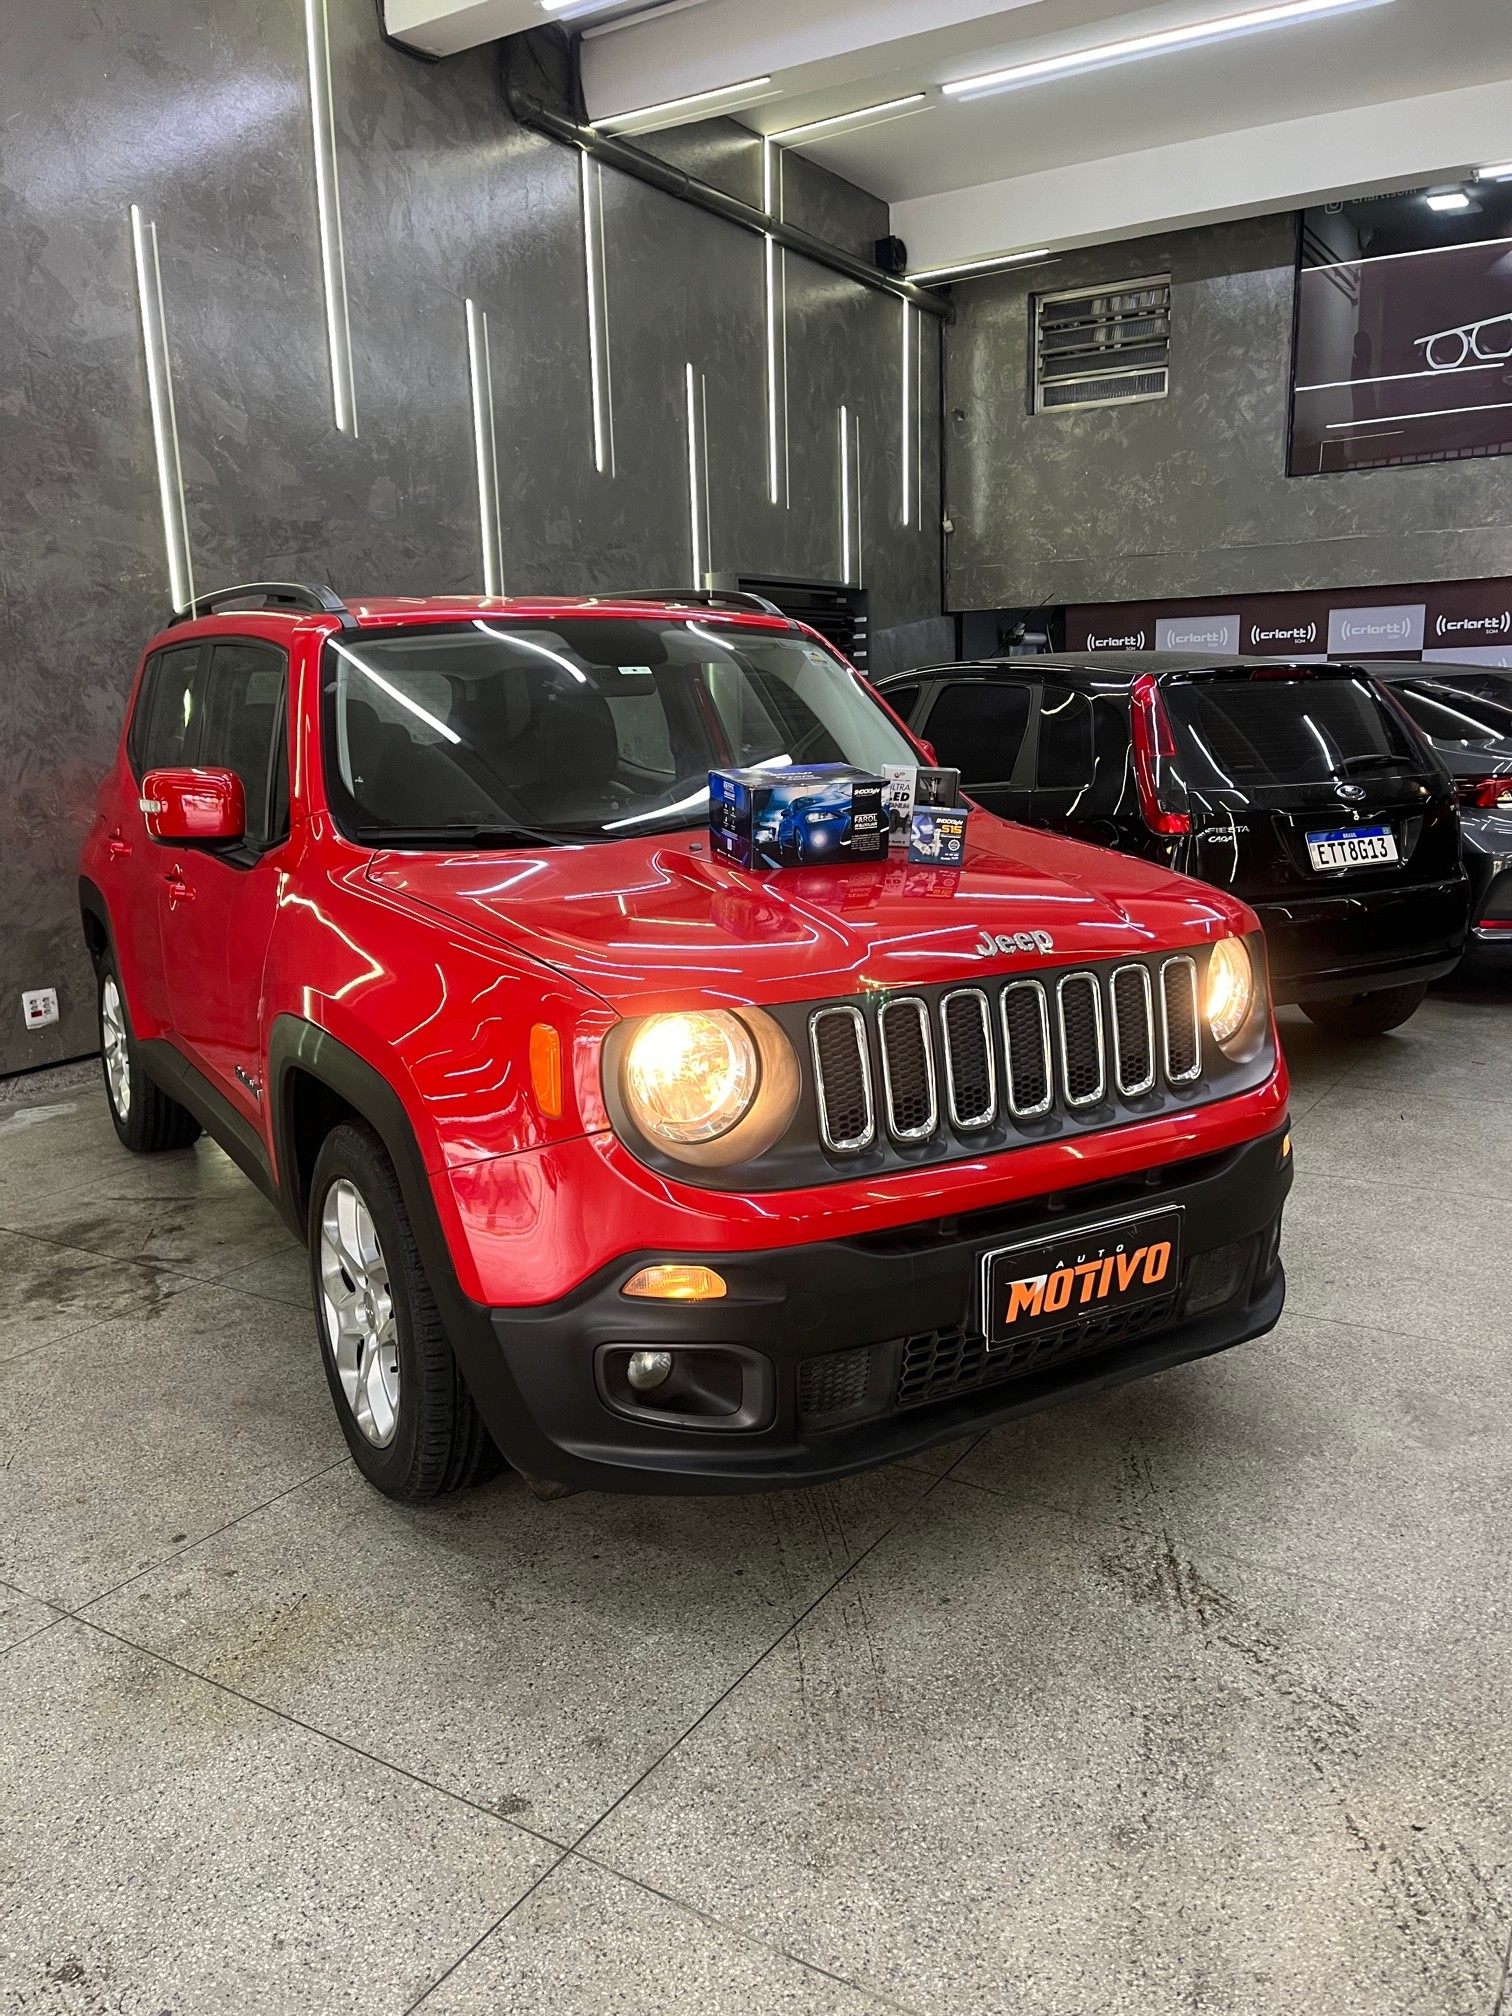 Upgrade de iluminação para o Jeep Renegade